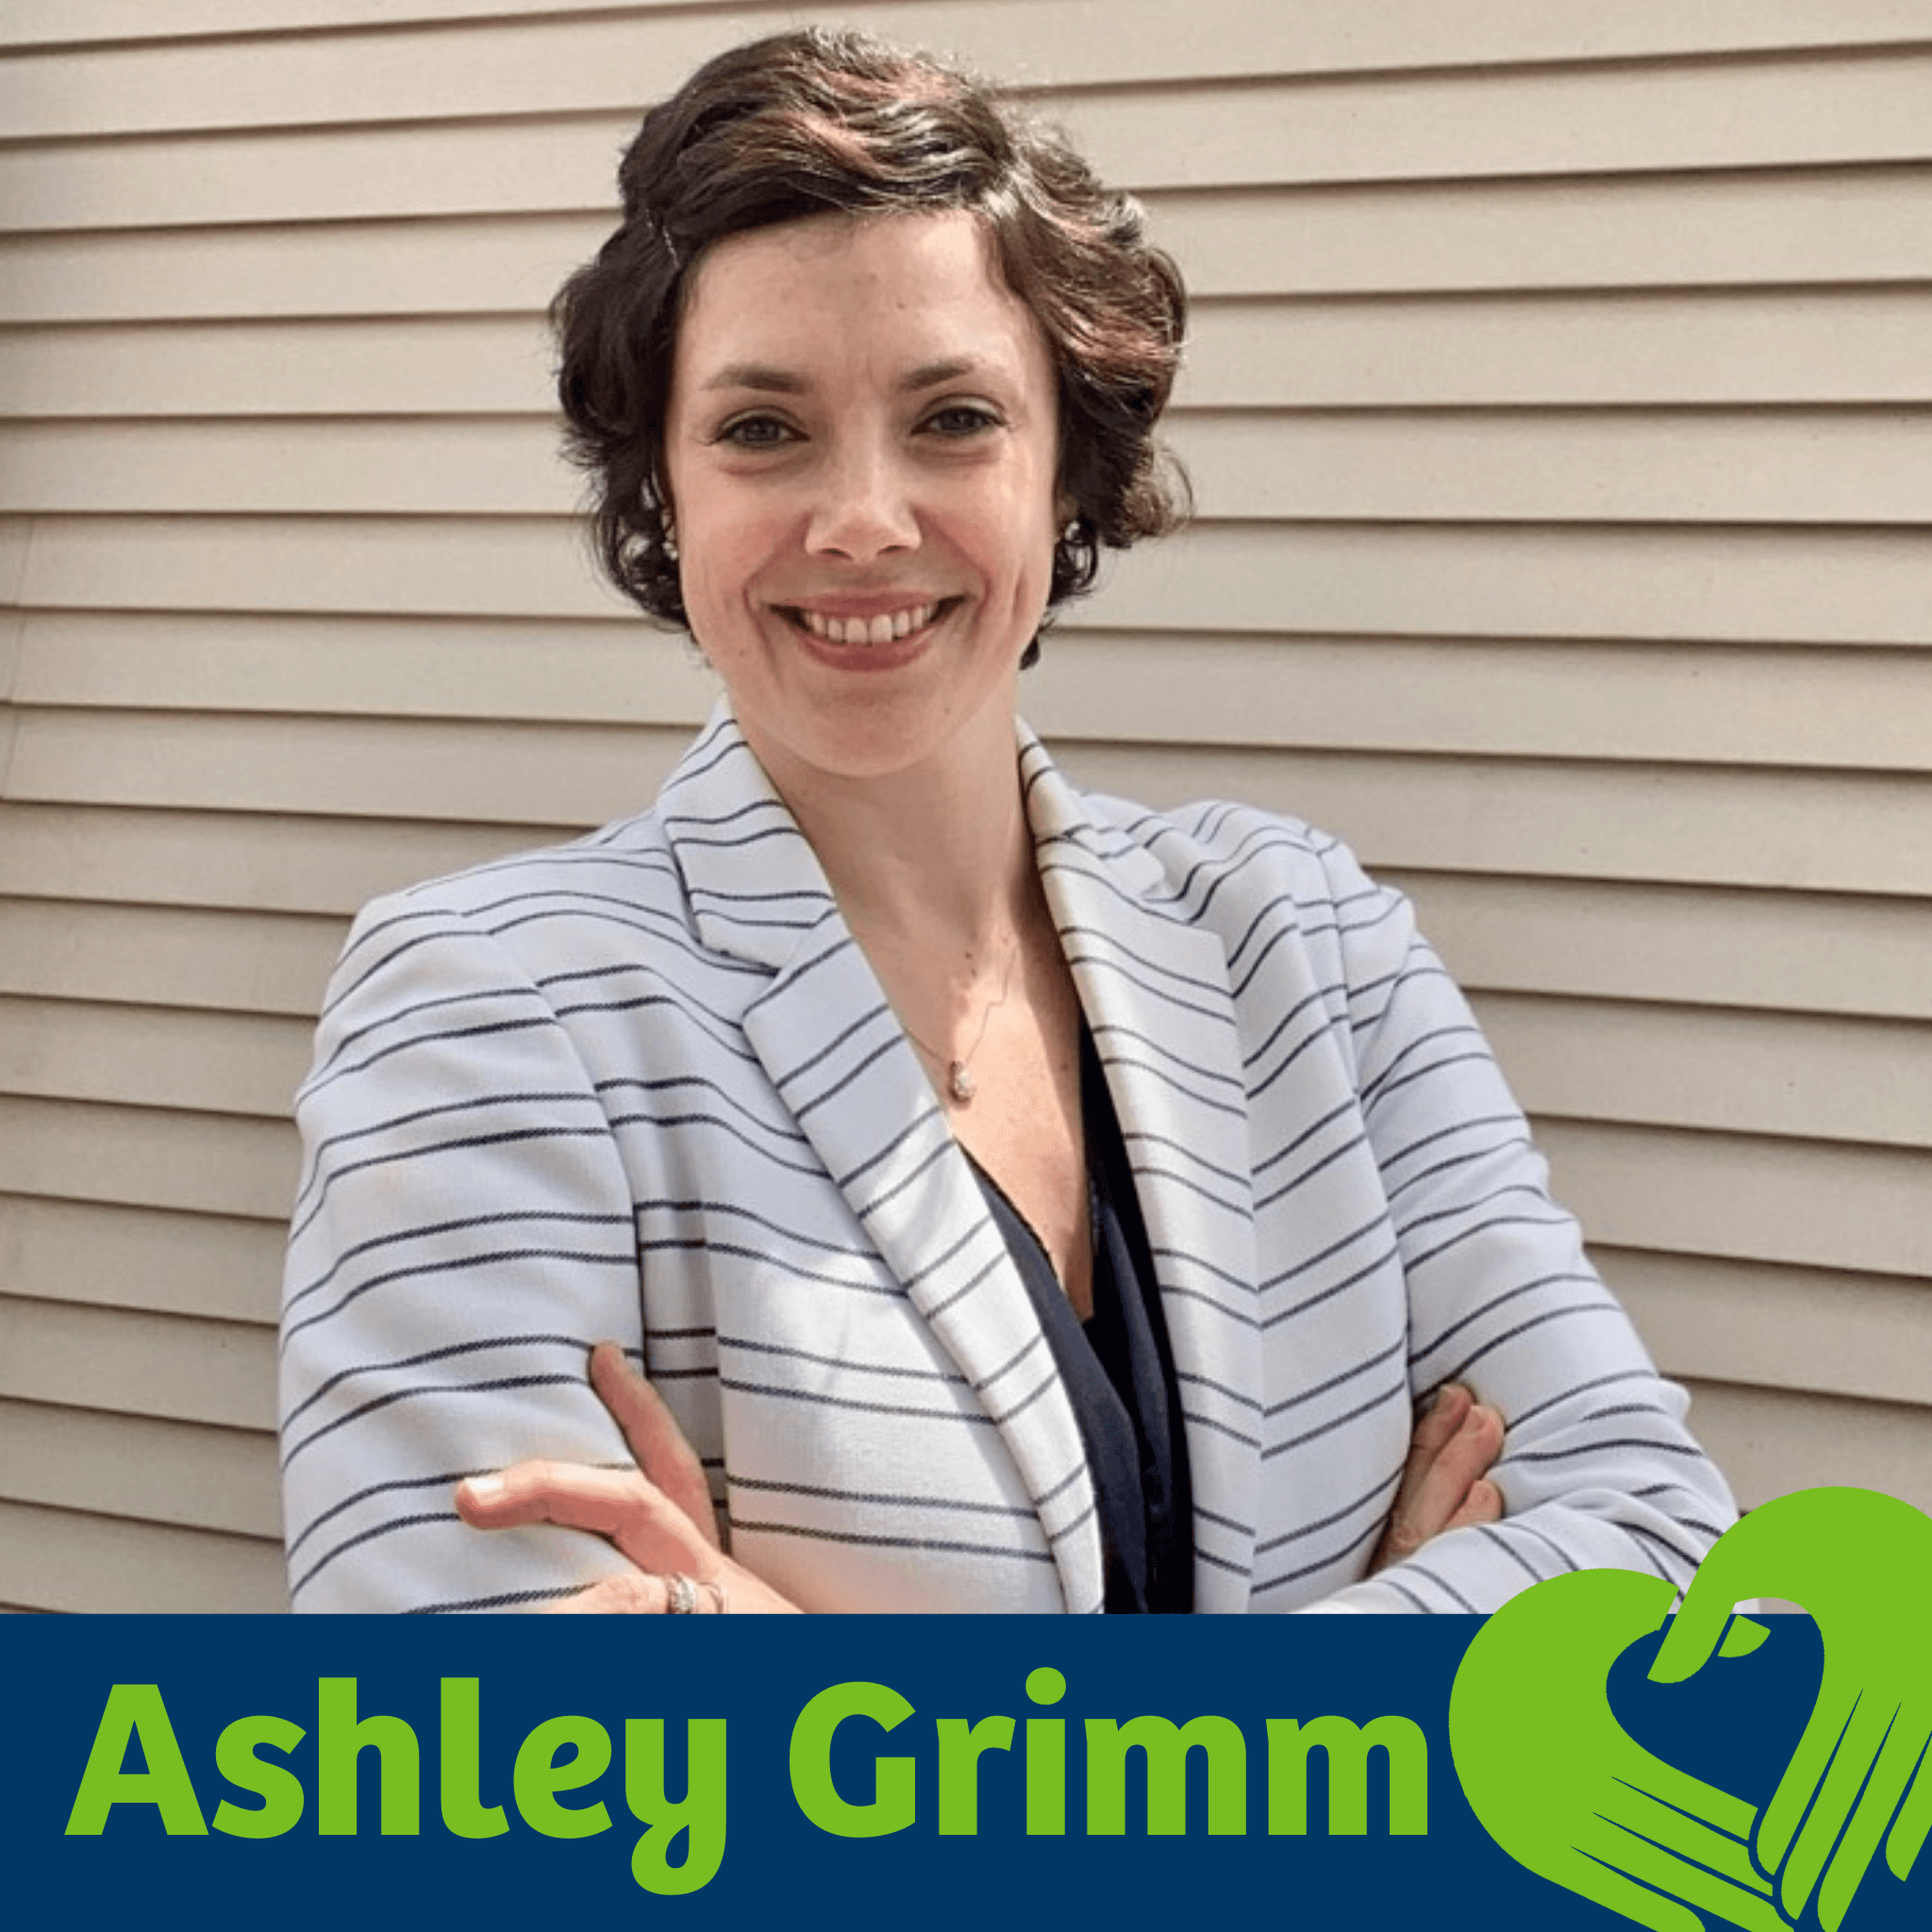 Ashley Grimm